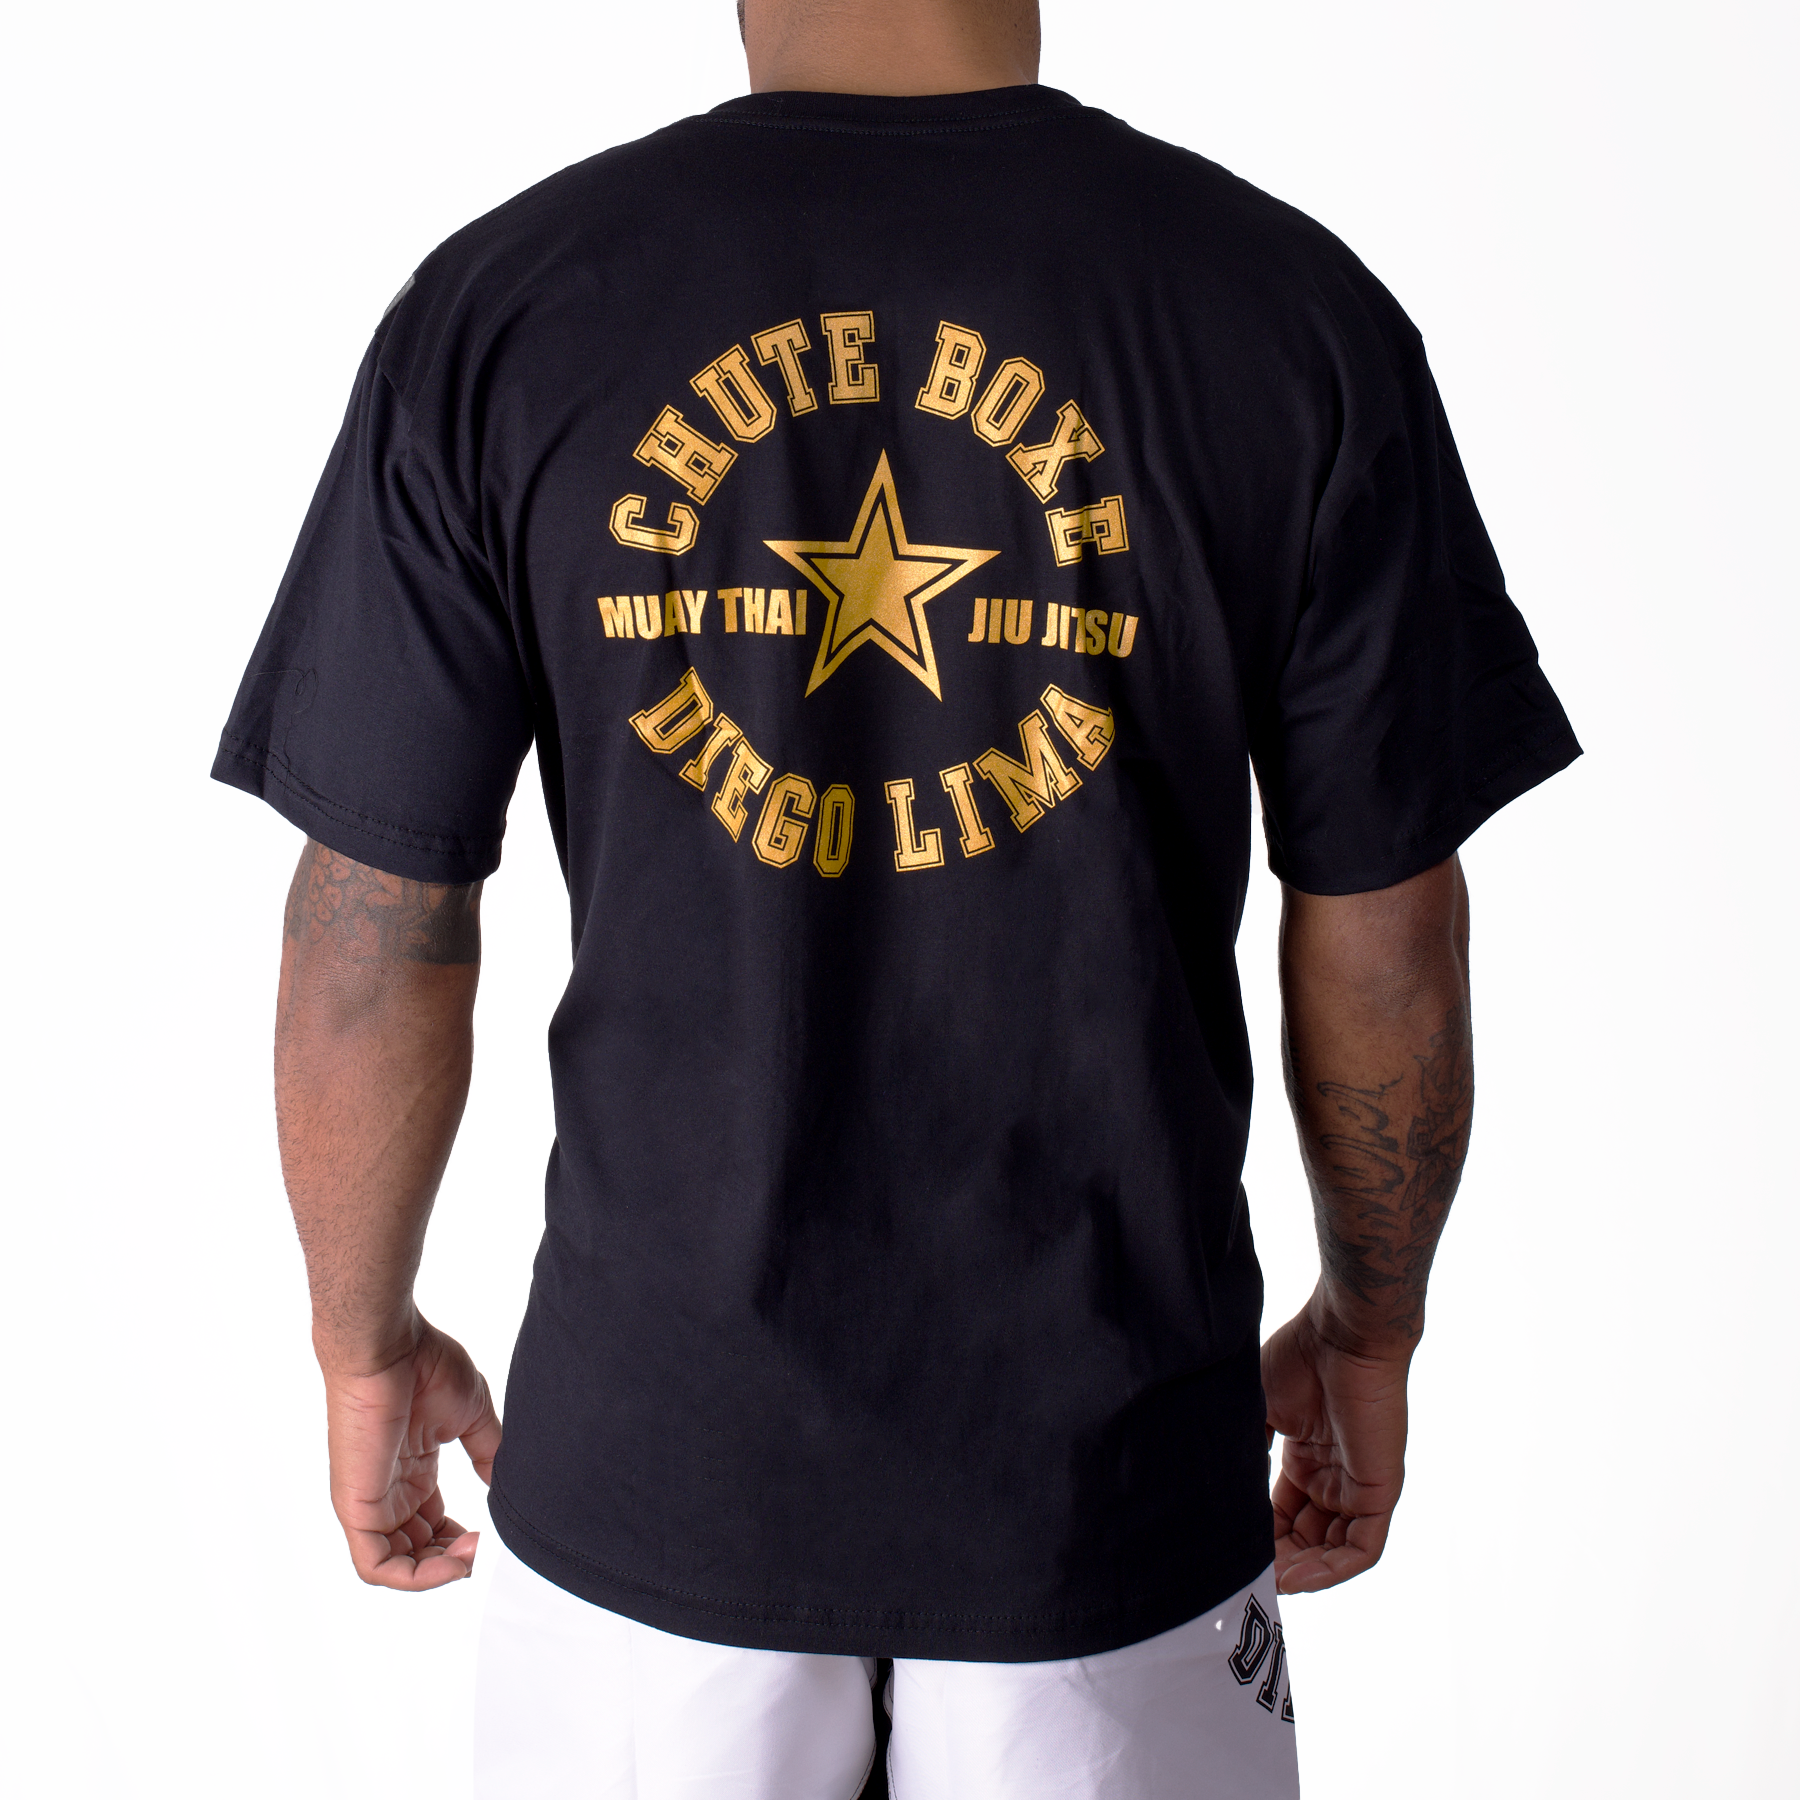 Camiseta Chute Boxe - CB Preta com Dourado